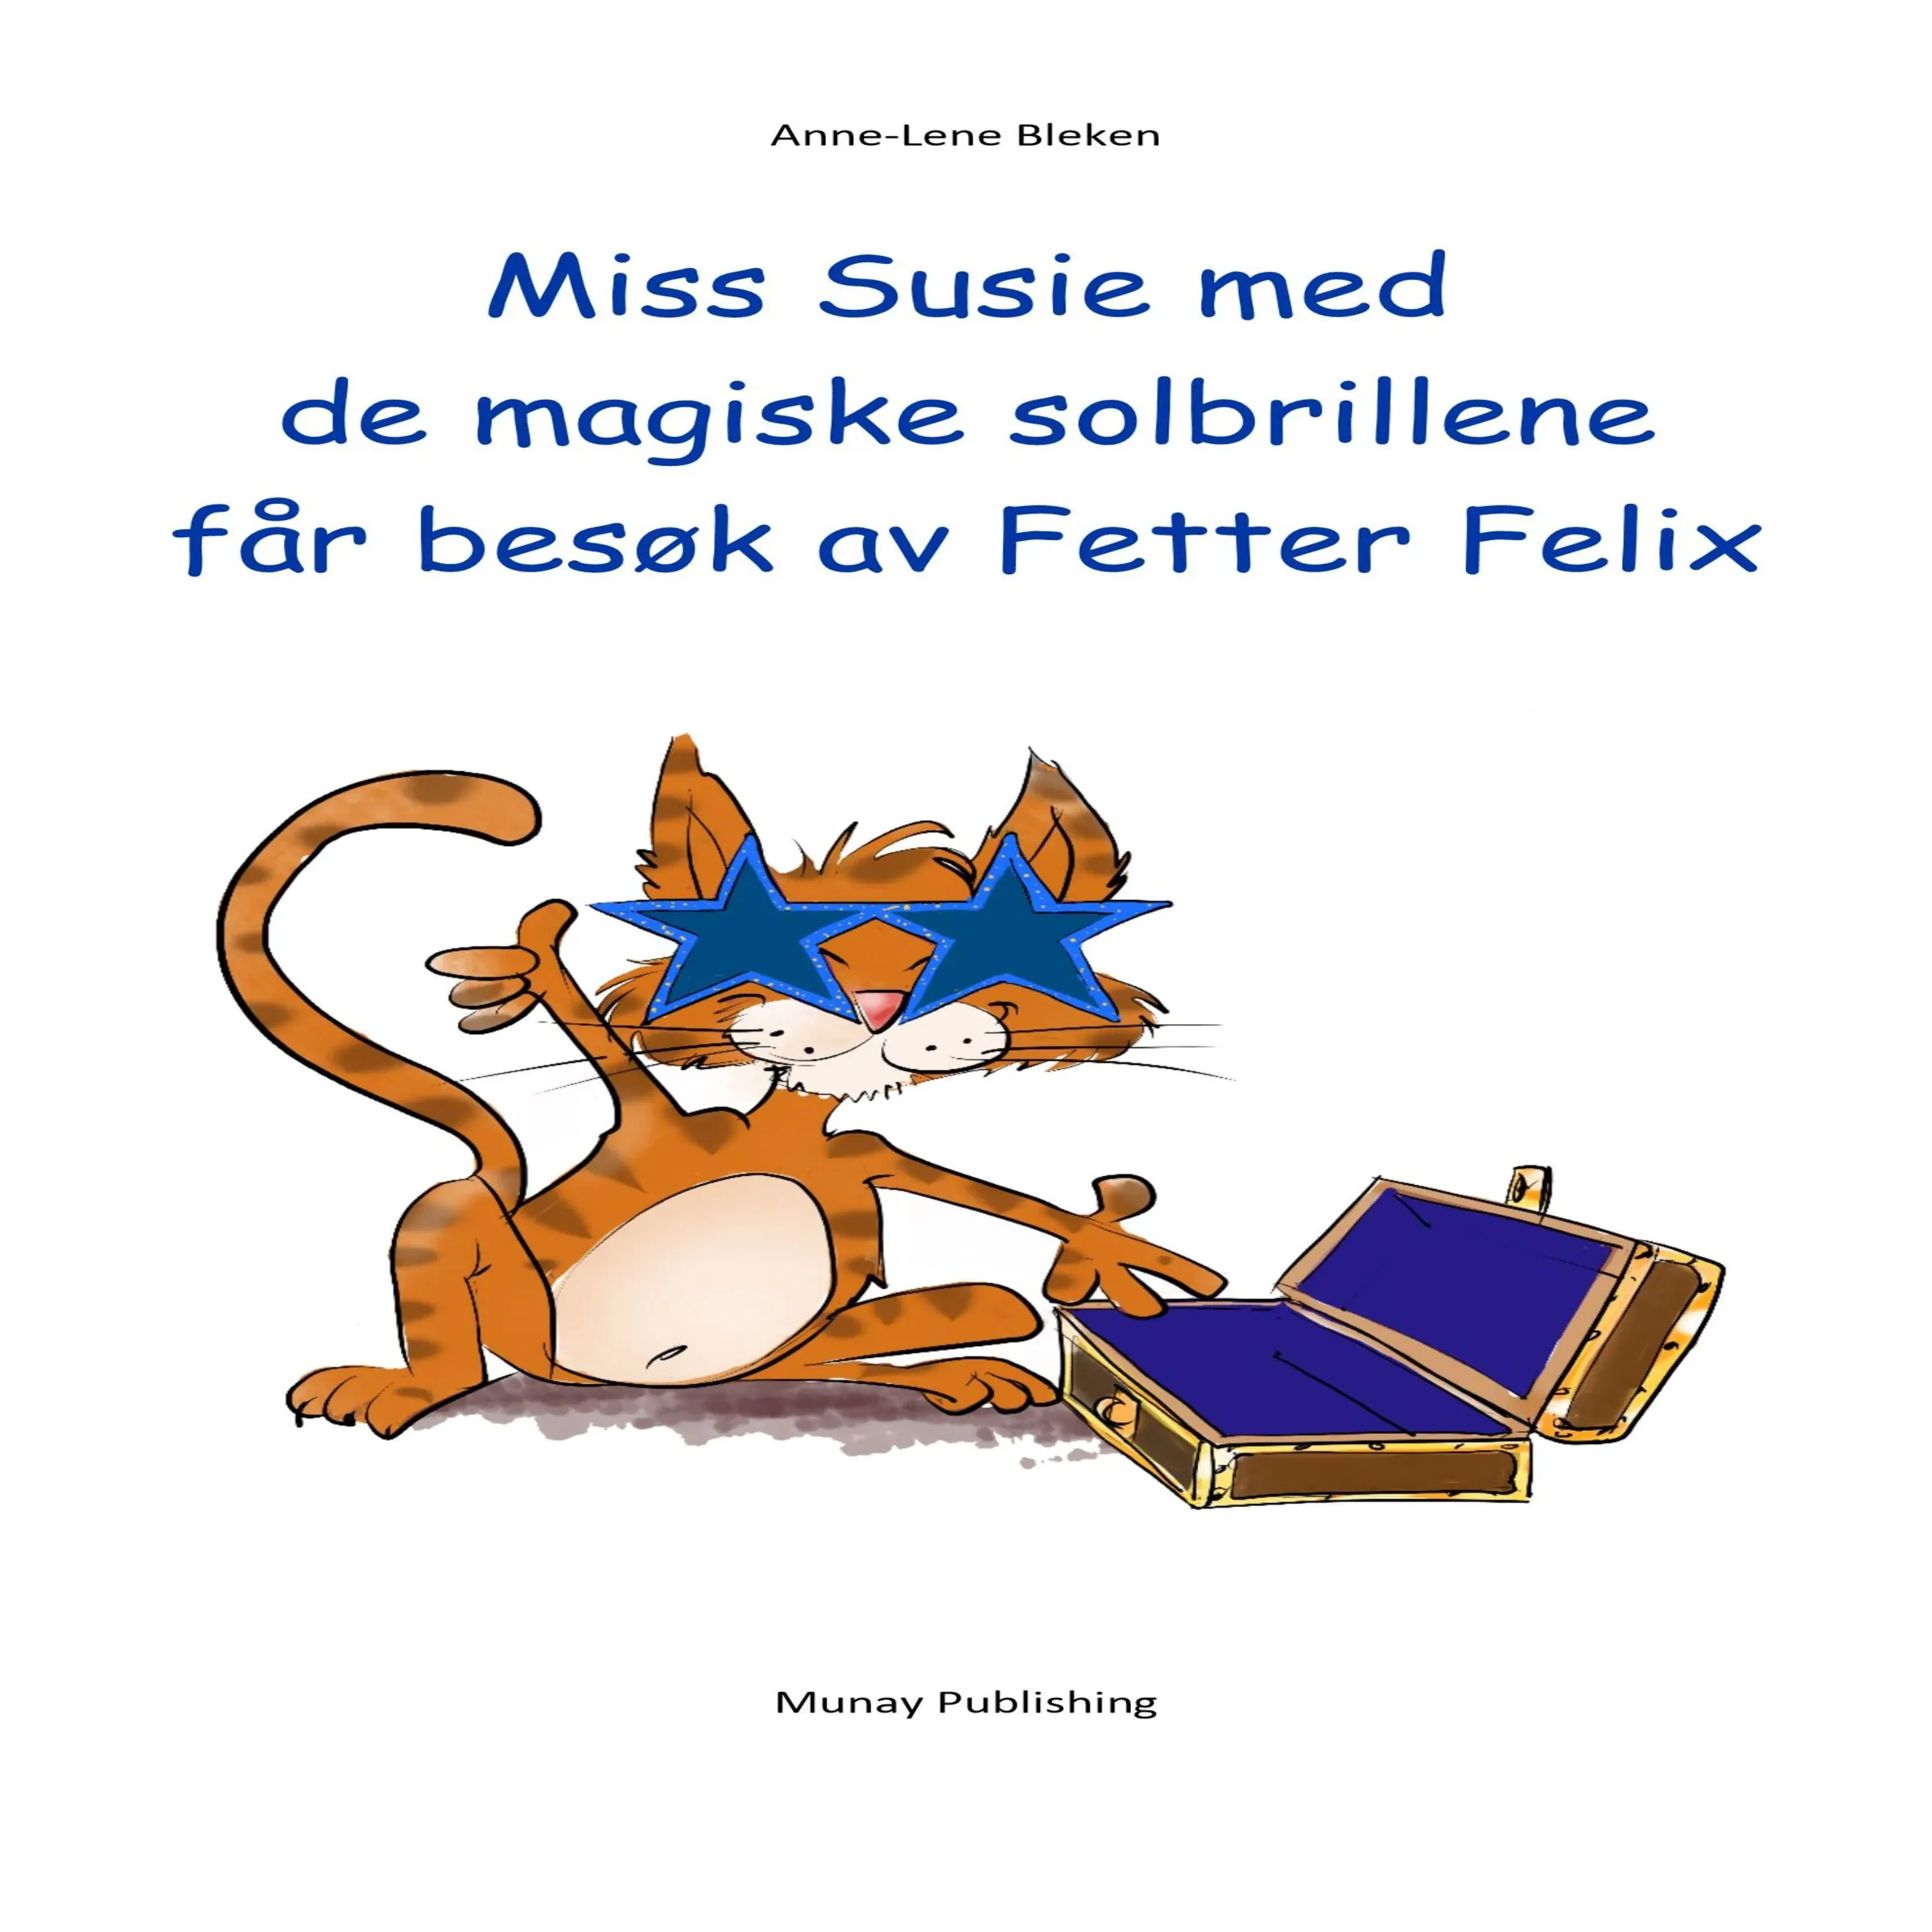 Miss Susie med de magiske solbrillene får besøk av Fetter Felix by Anne-Lene Bleken Audiobook